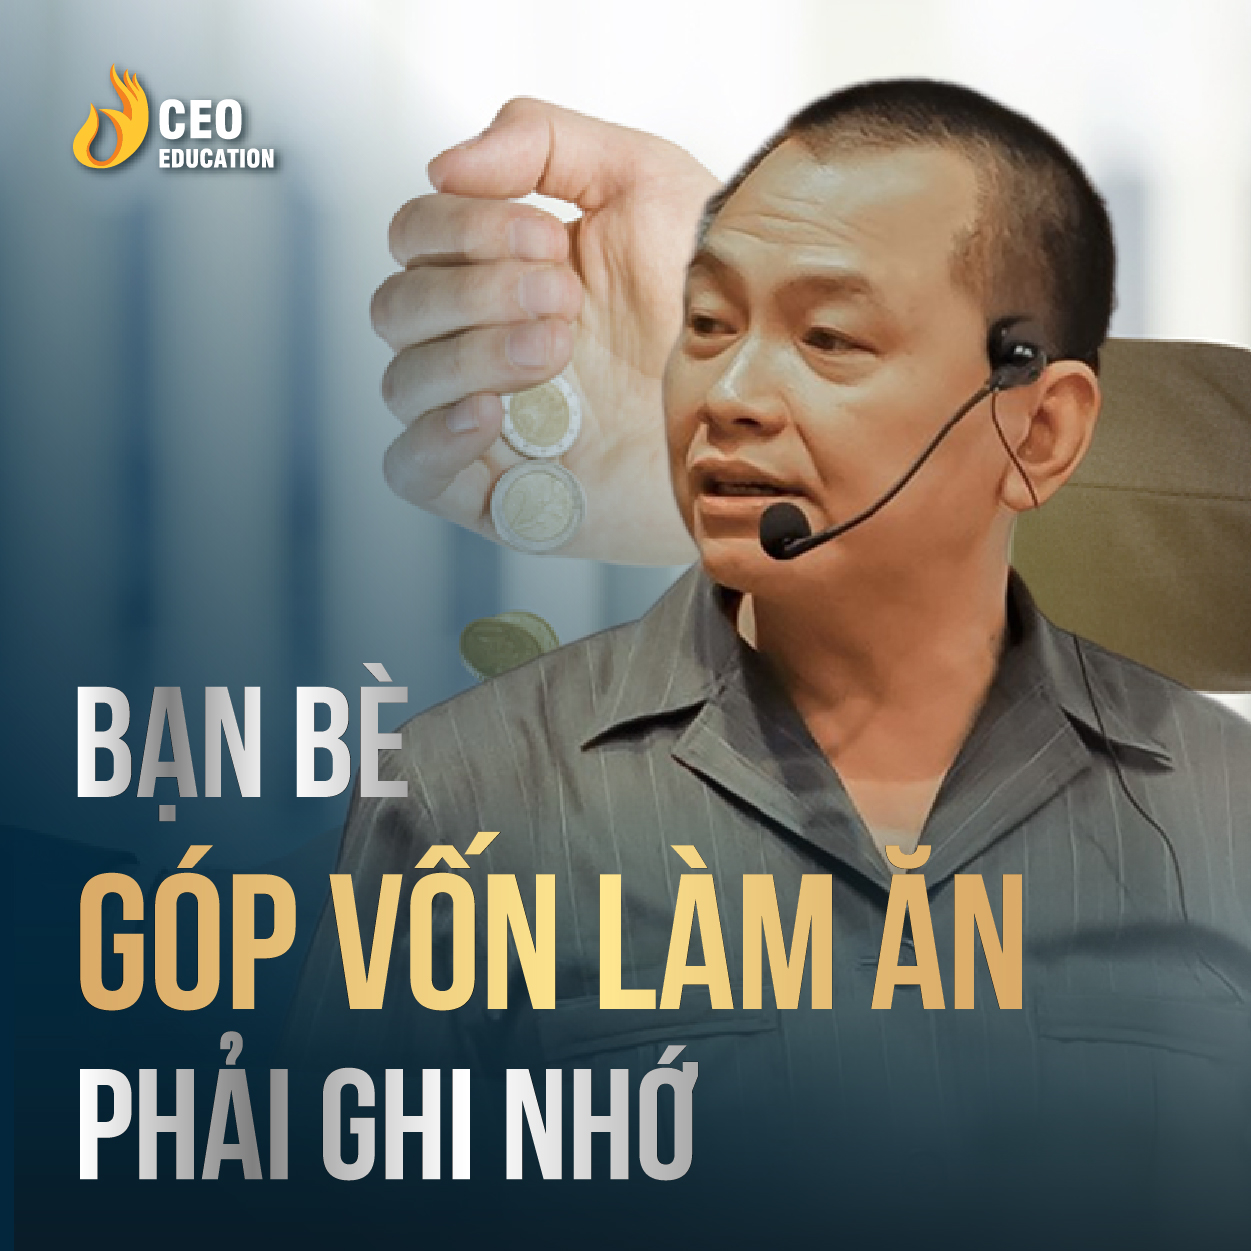 Bạn bè góp vốn làm ăn cần ghi nhớ | Ngô Minh Tuấn | Học Viện CEO Việt Nam